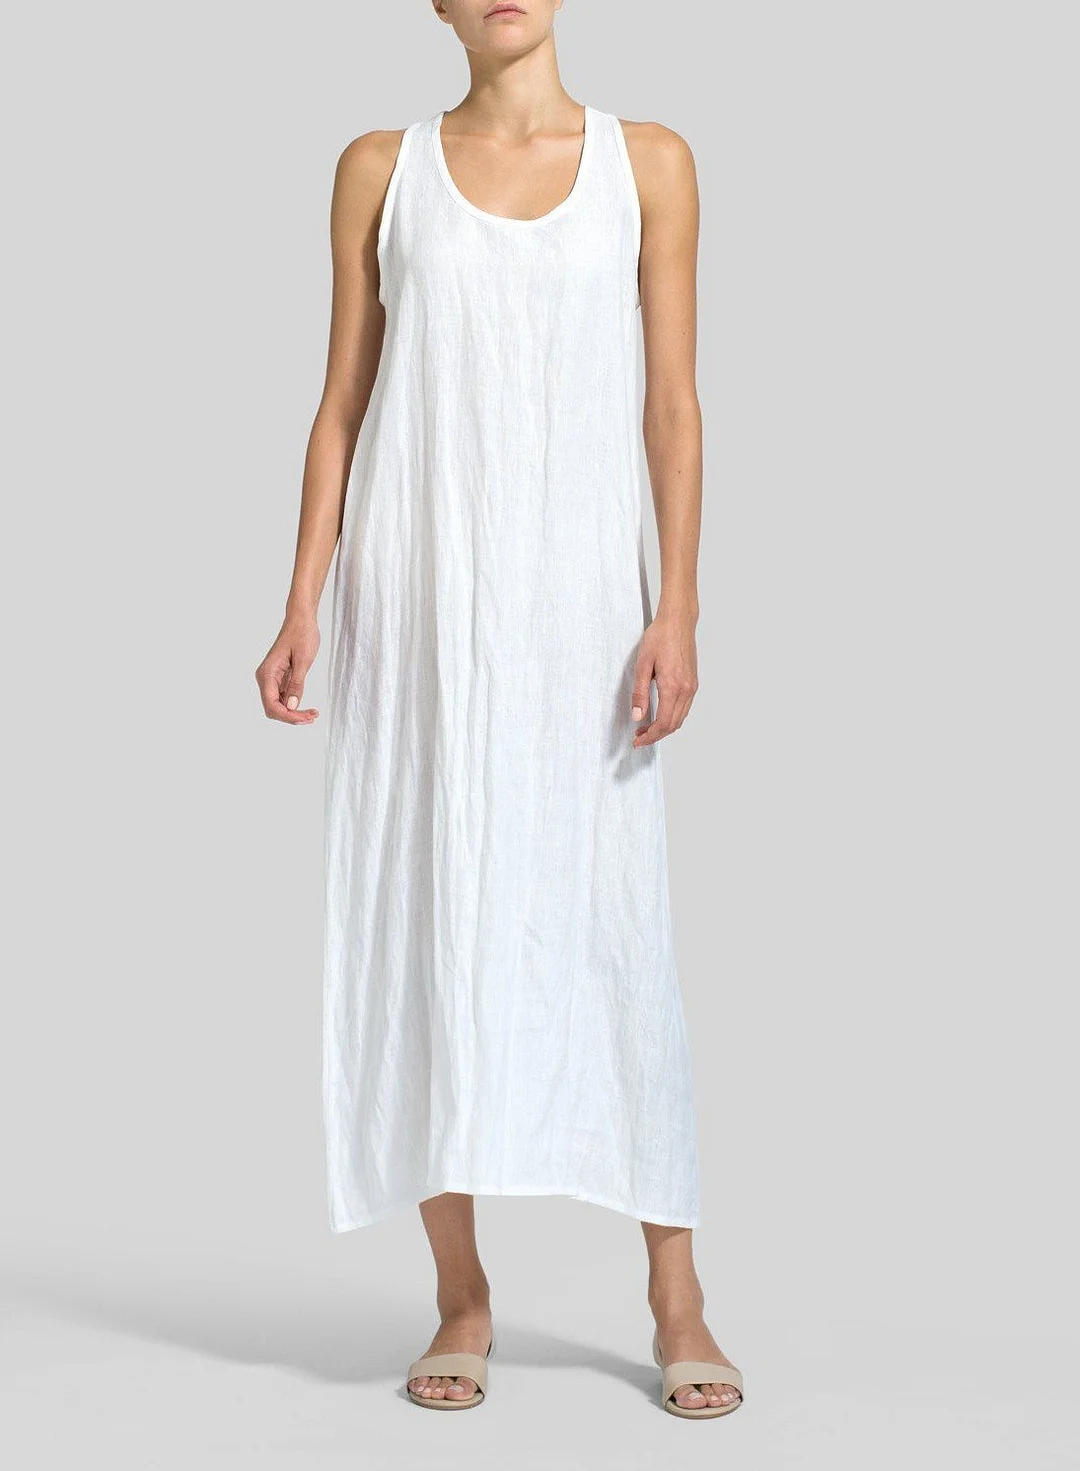 Women's Loose Cotton Linen Long Tank Top Dress Sleeveless Maxi Dress